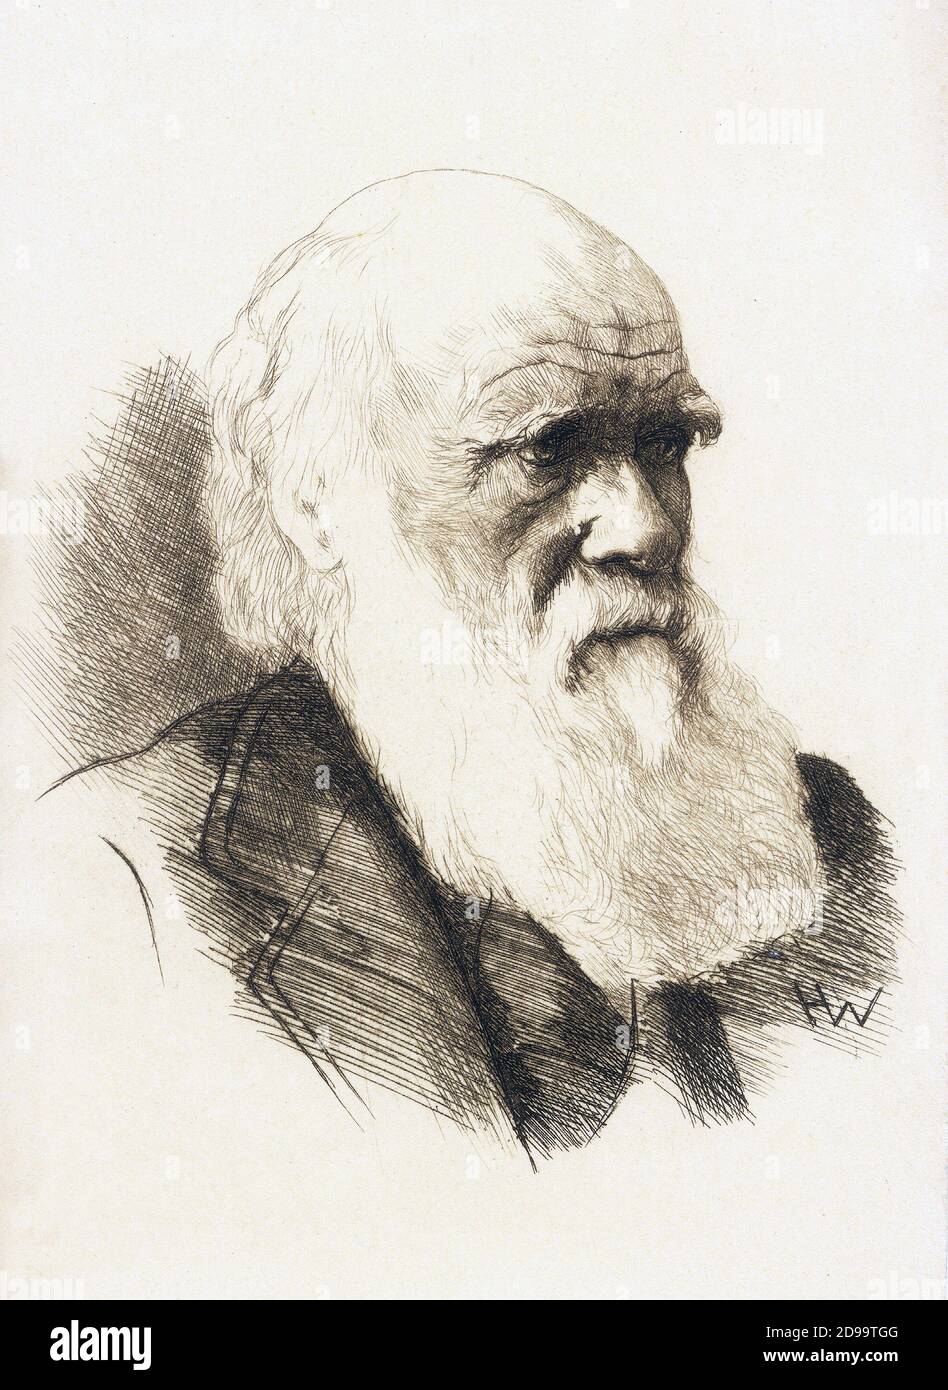 Le naturaliste anglais CHARLES Robert DARWIN ( 1809 - 1882 ) - NATURALISTA - SCIENZIATO - SCIENTIFIQUE - EVOLUZIONISMO - ÉVOLUTIONISME - Teoria Evoluzionista - barba - barbe - gravure de portrait - ritratto incisione - uomo anziano vecchio - vieil homme ---- Archivio GBB Banque D'Images